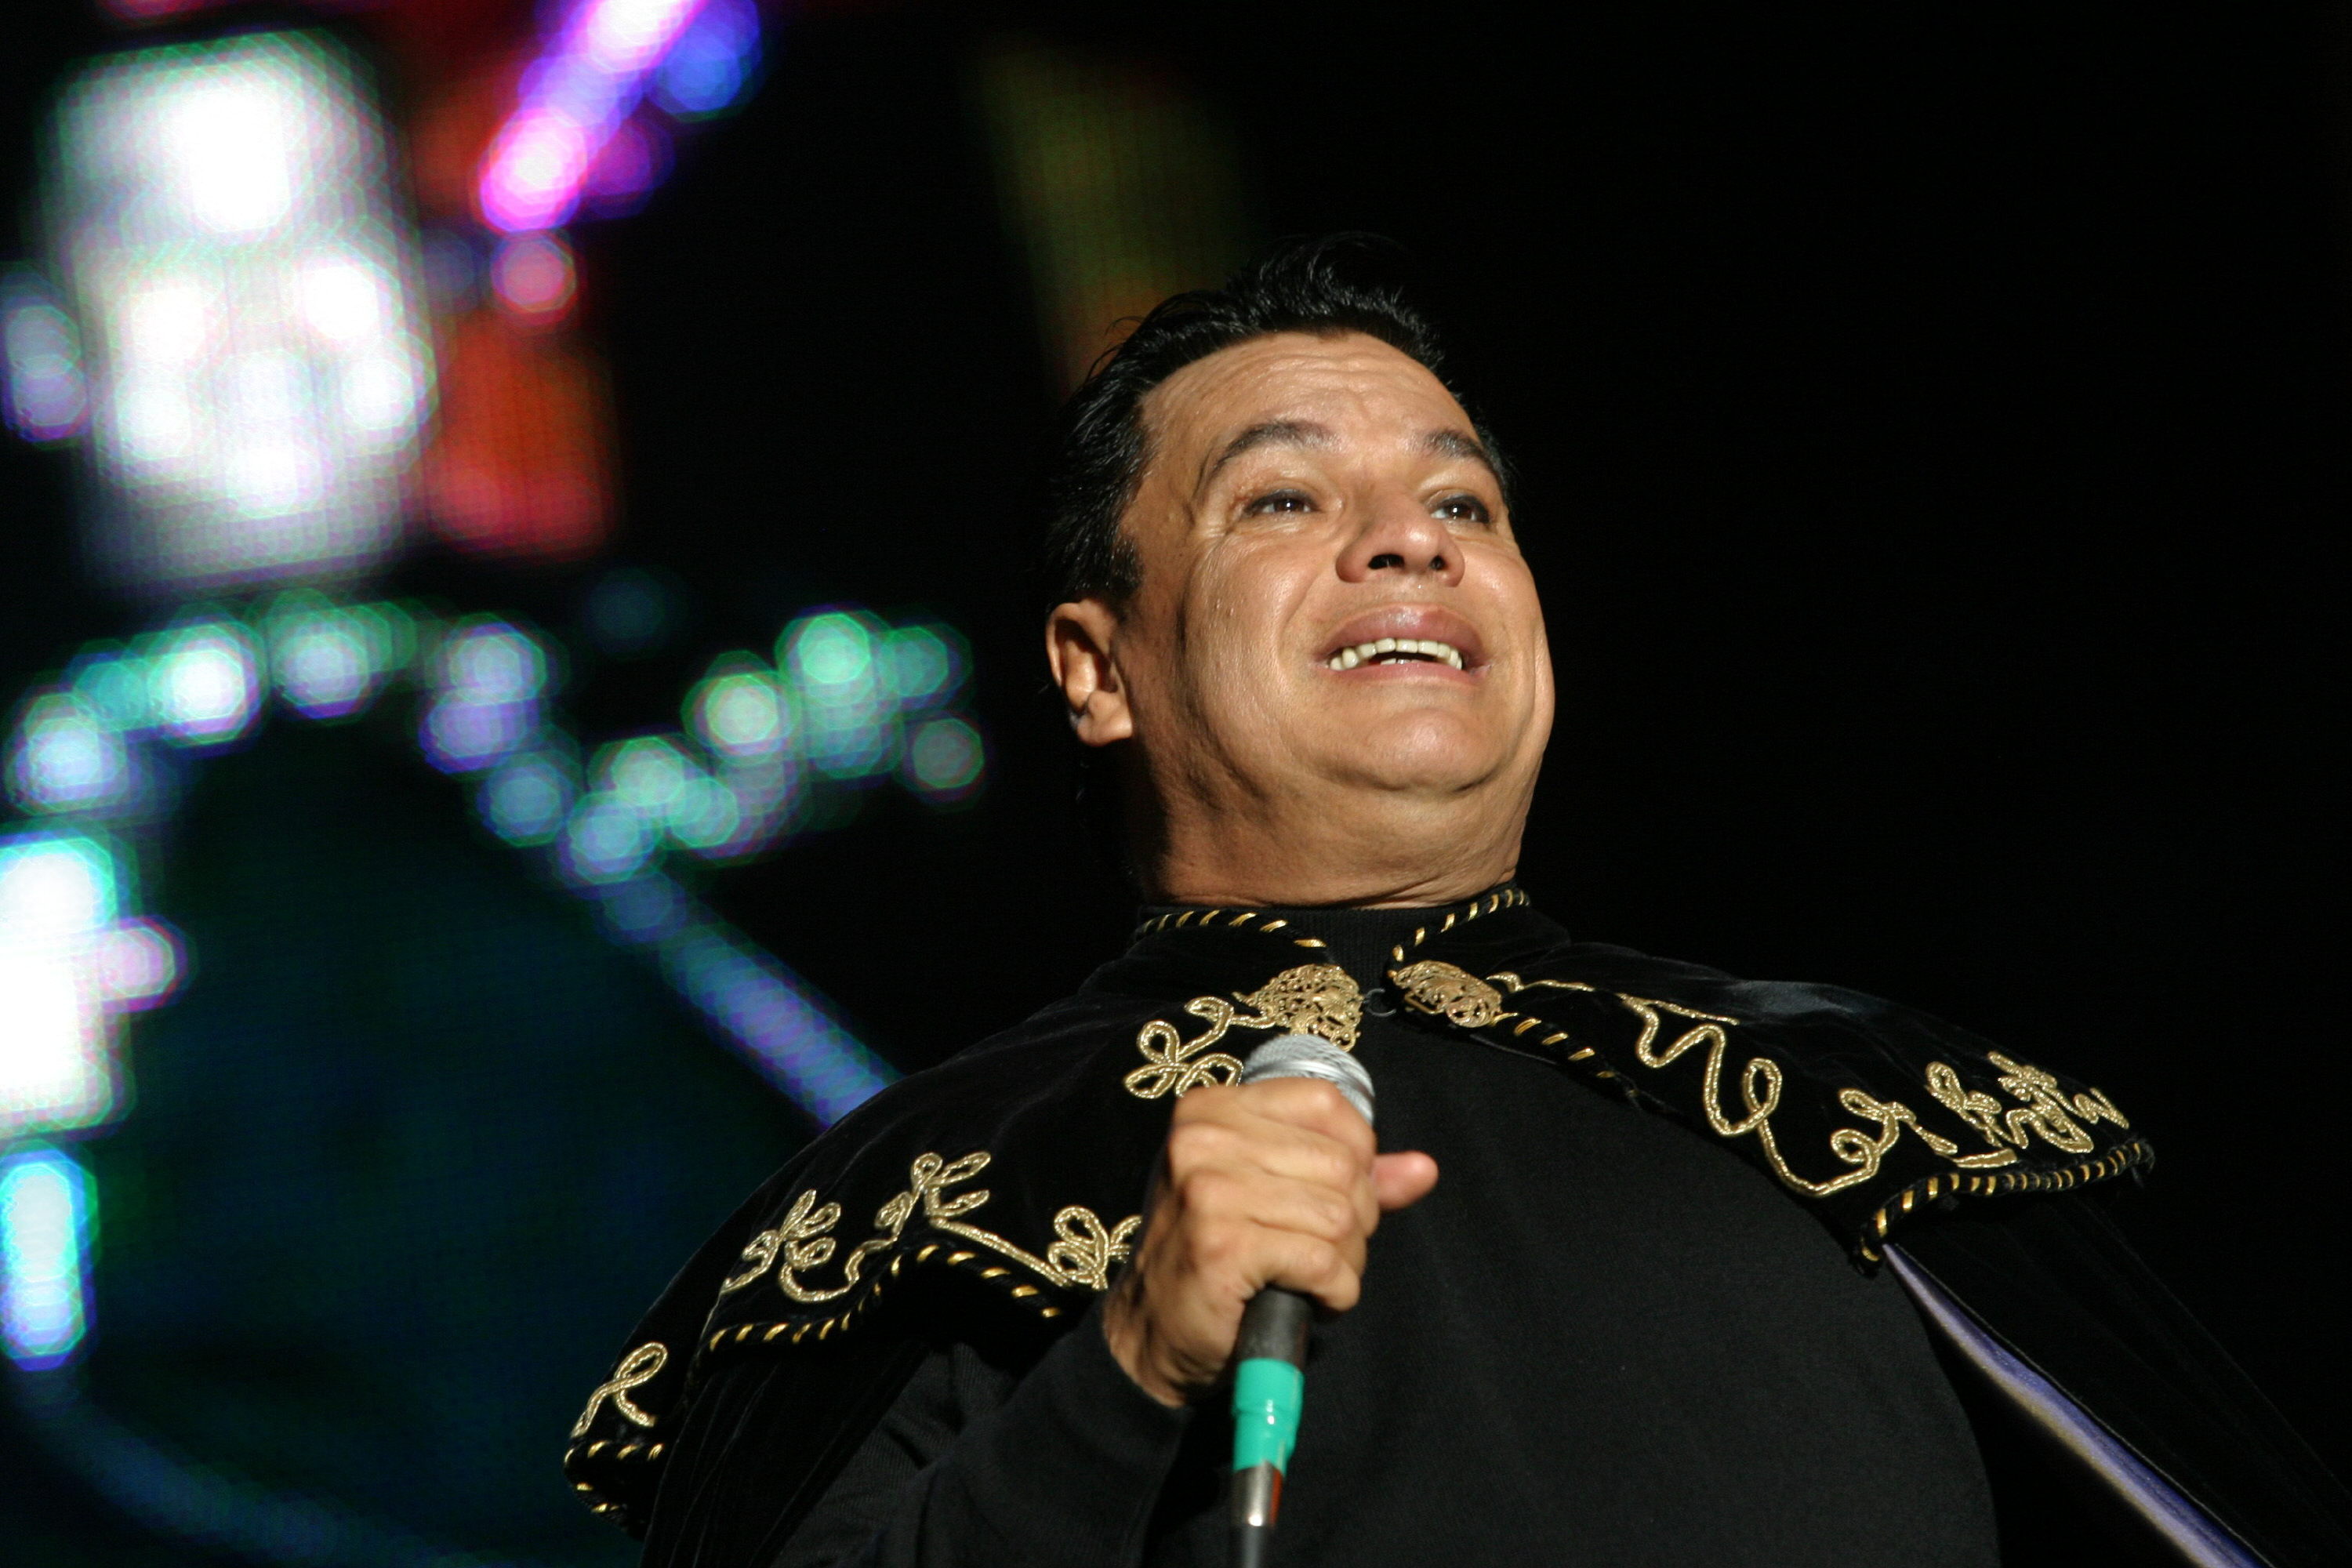 El Divo de Juárez falleció en Santa Mónica, California, EE.UU. a una noche de un multitudinario concierto.